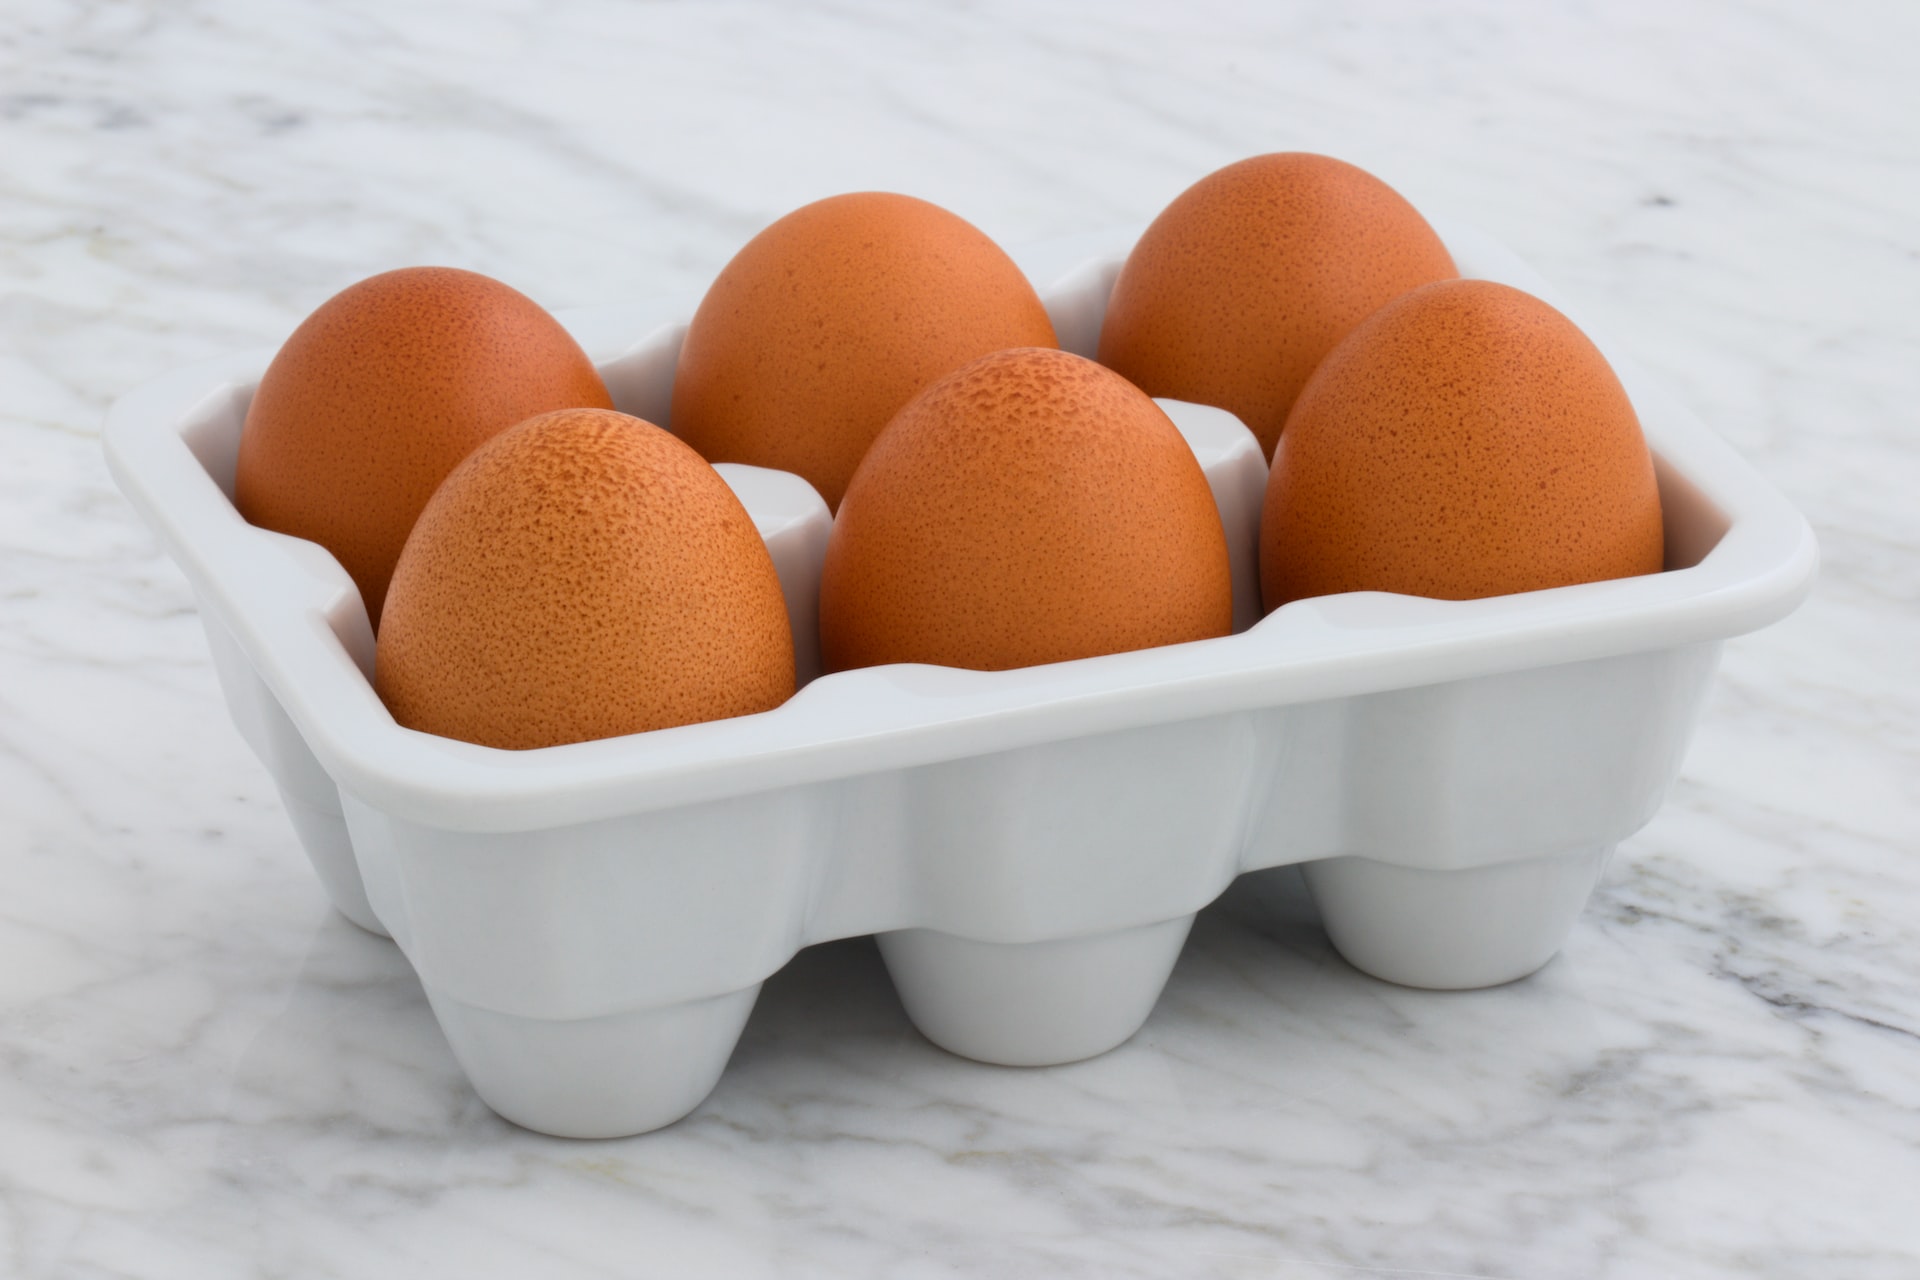 come conservare uova a lungo